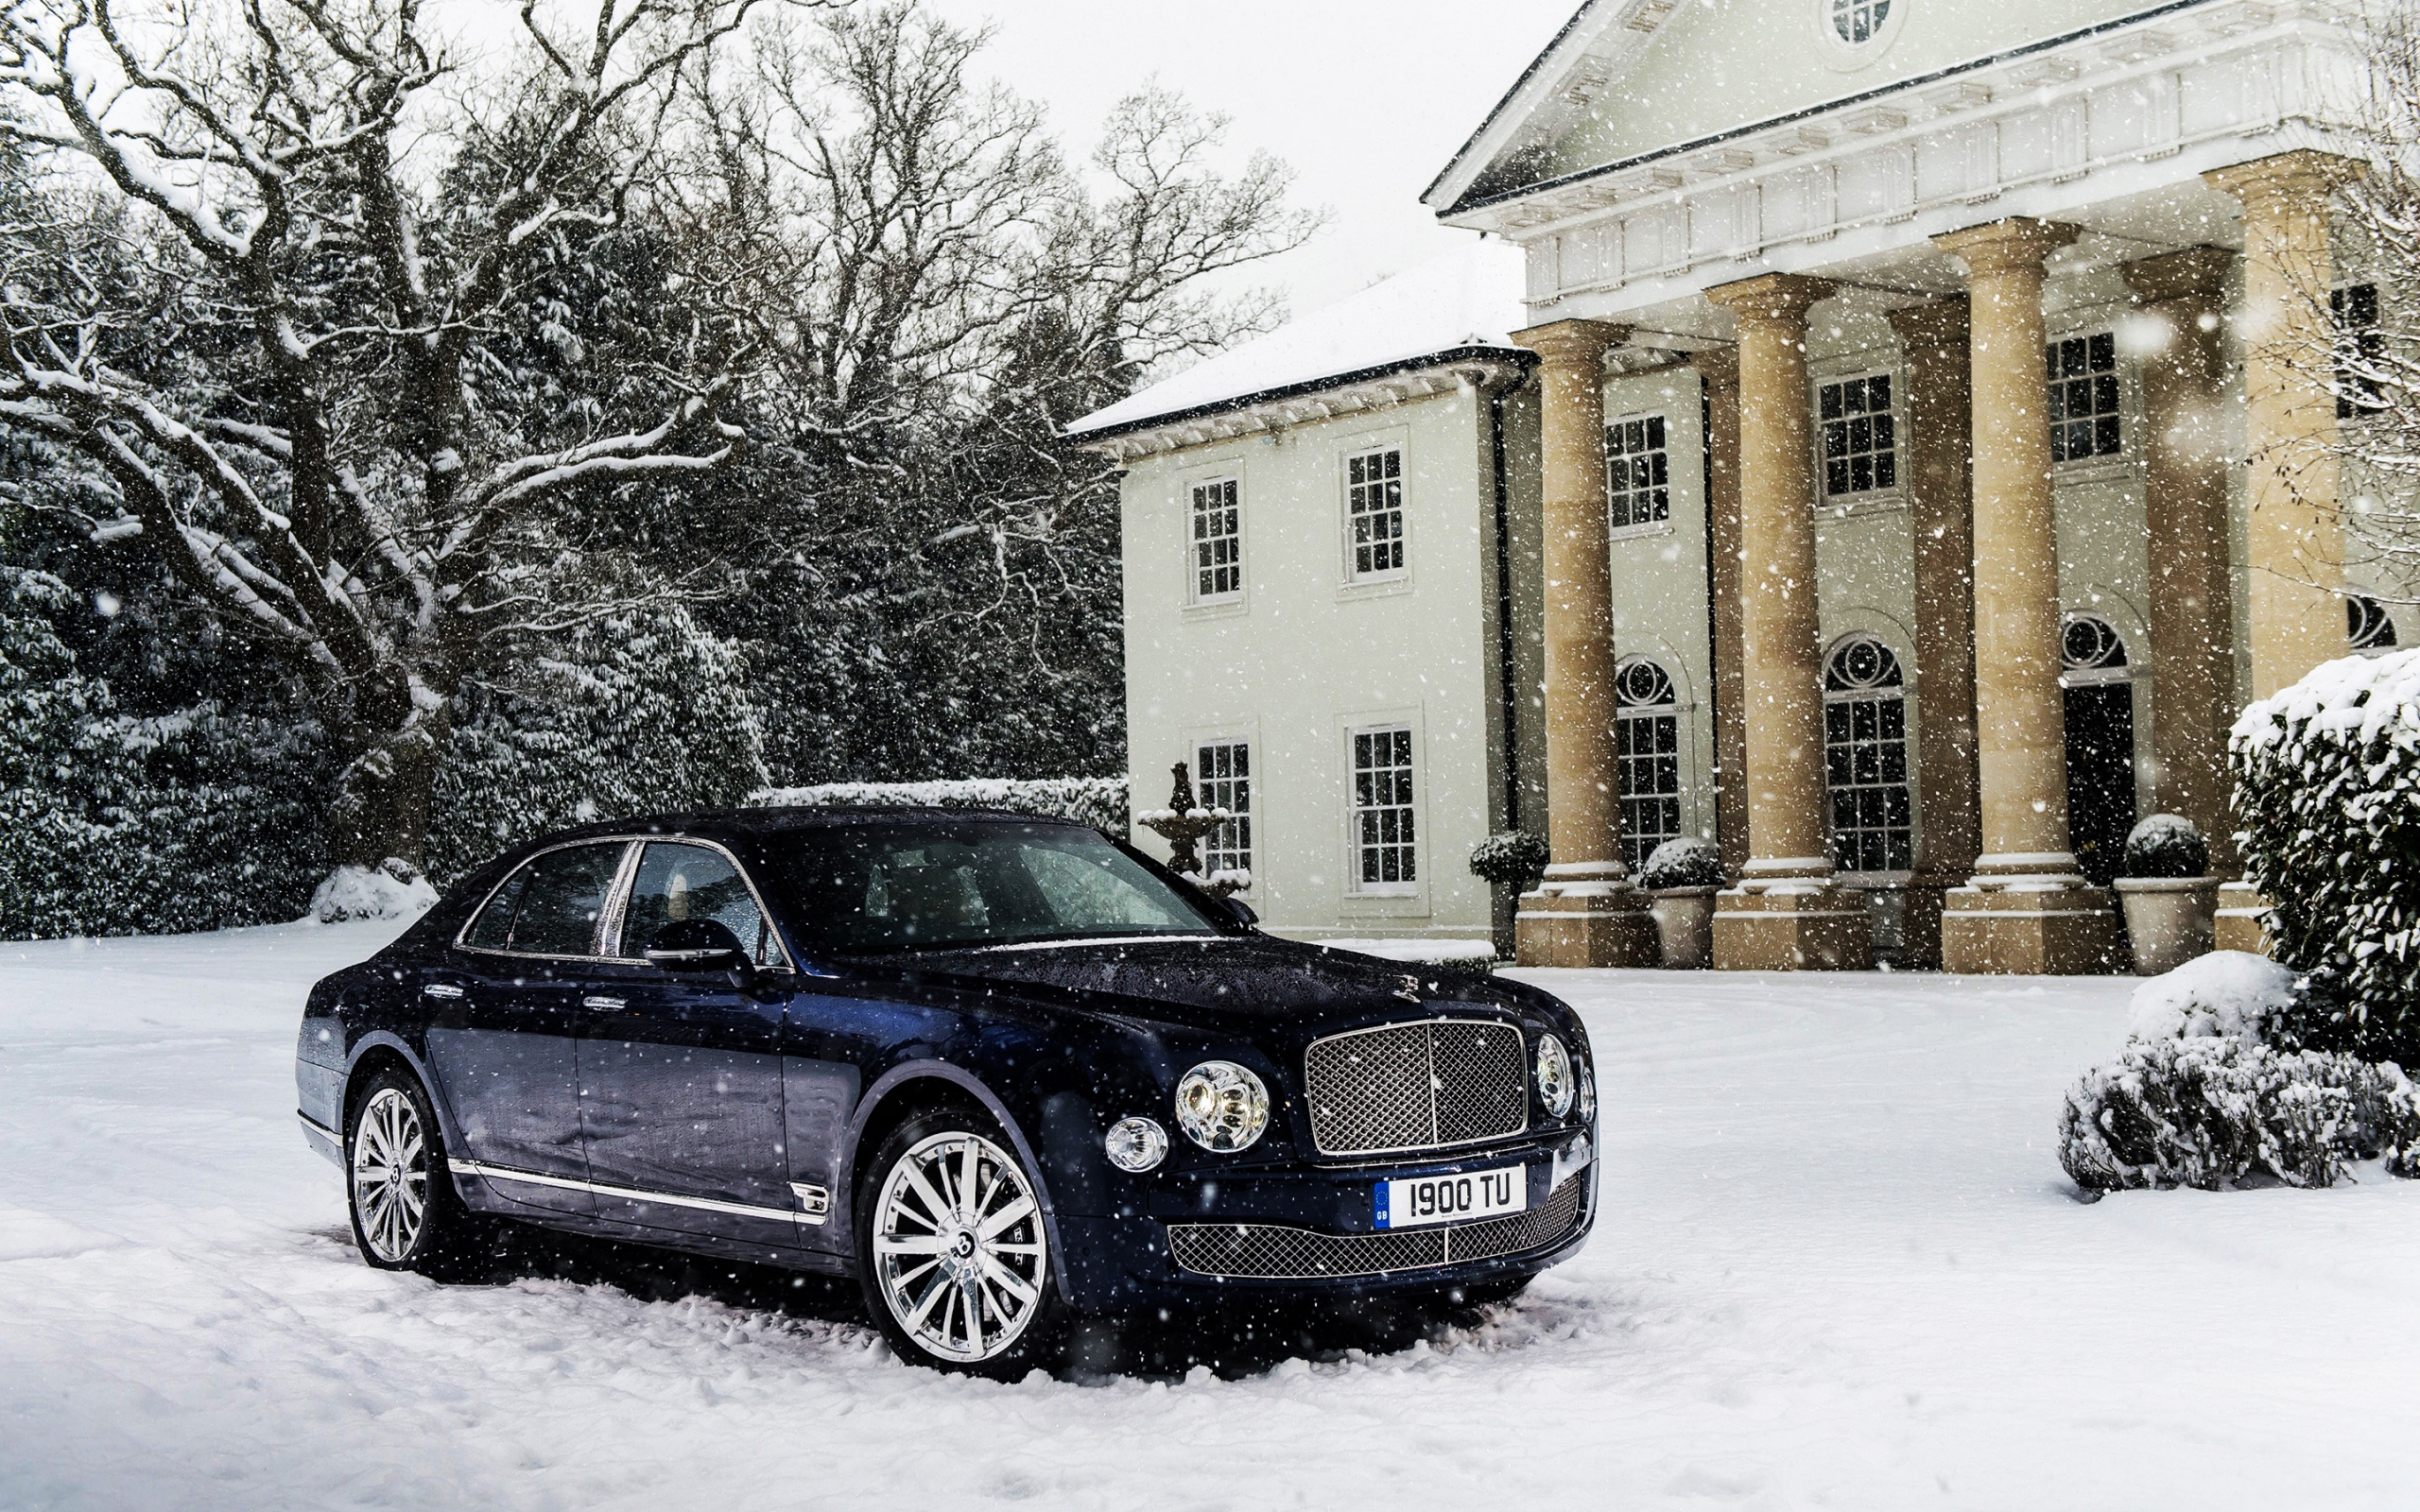 Bentley Mulsanne for 2560 x 1600 widescreen resolution